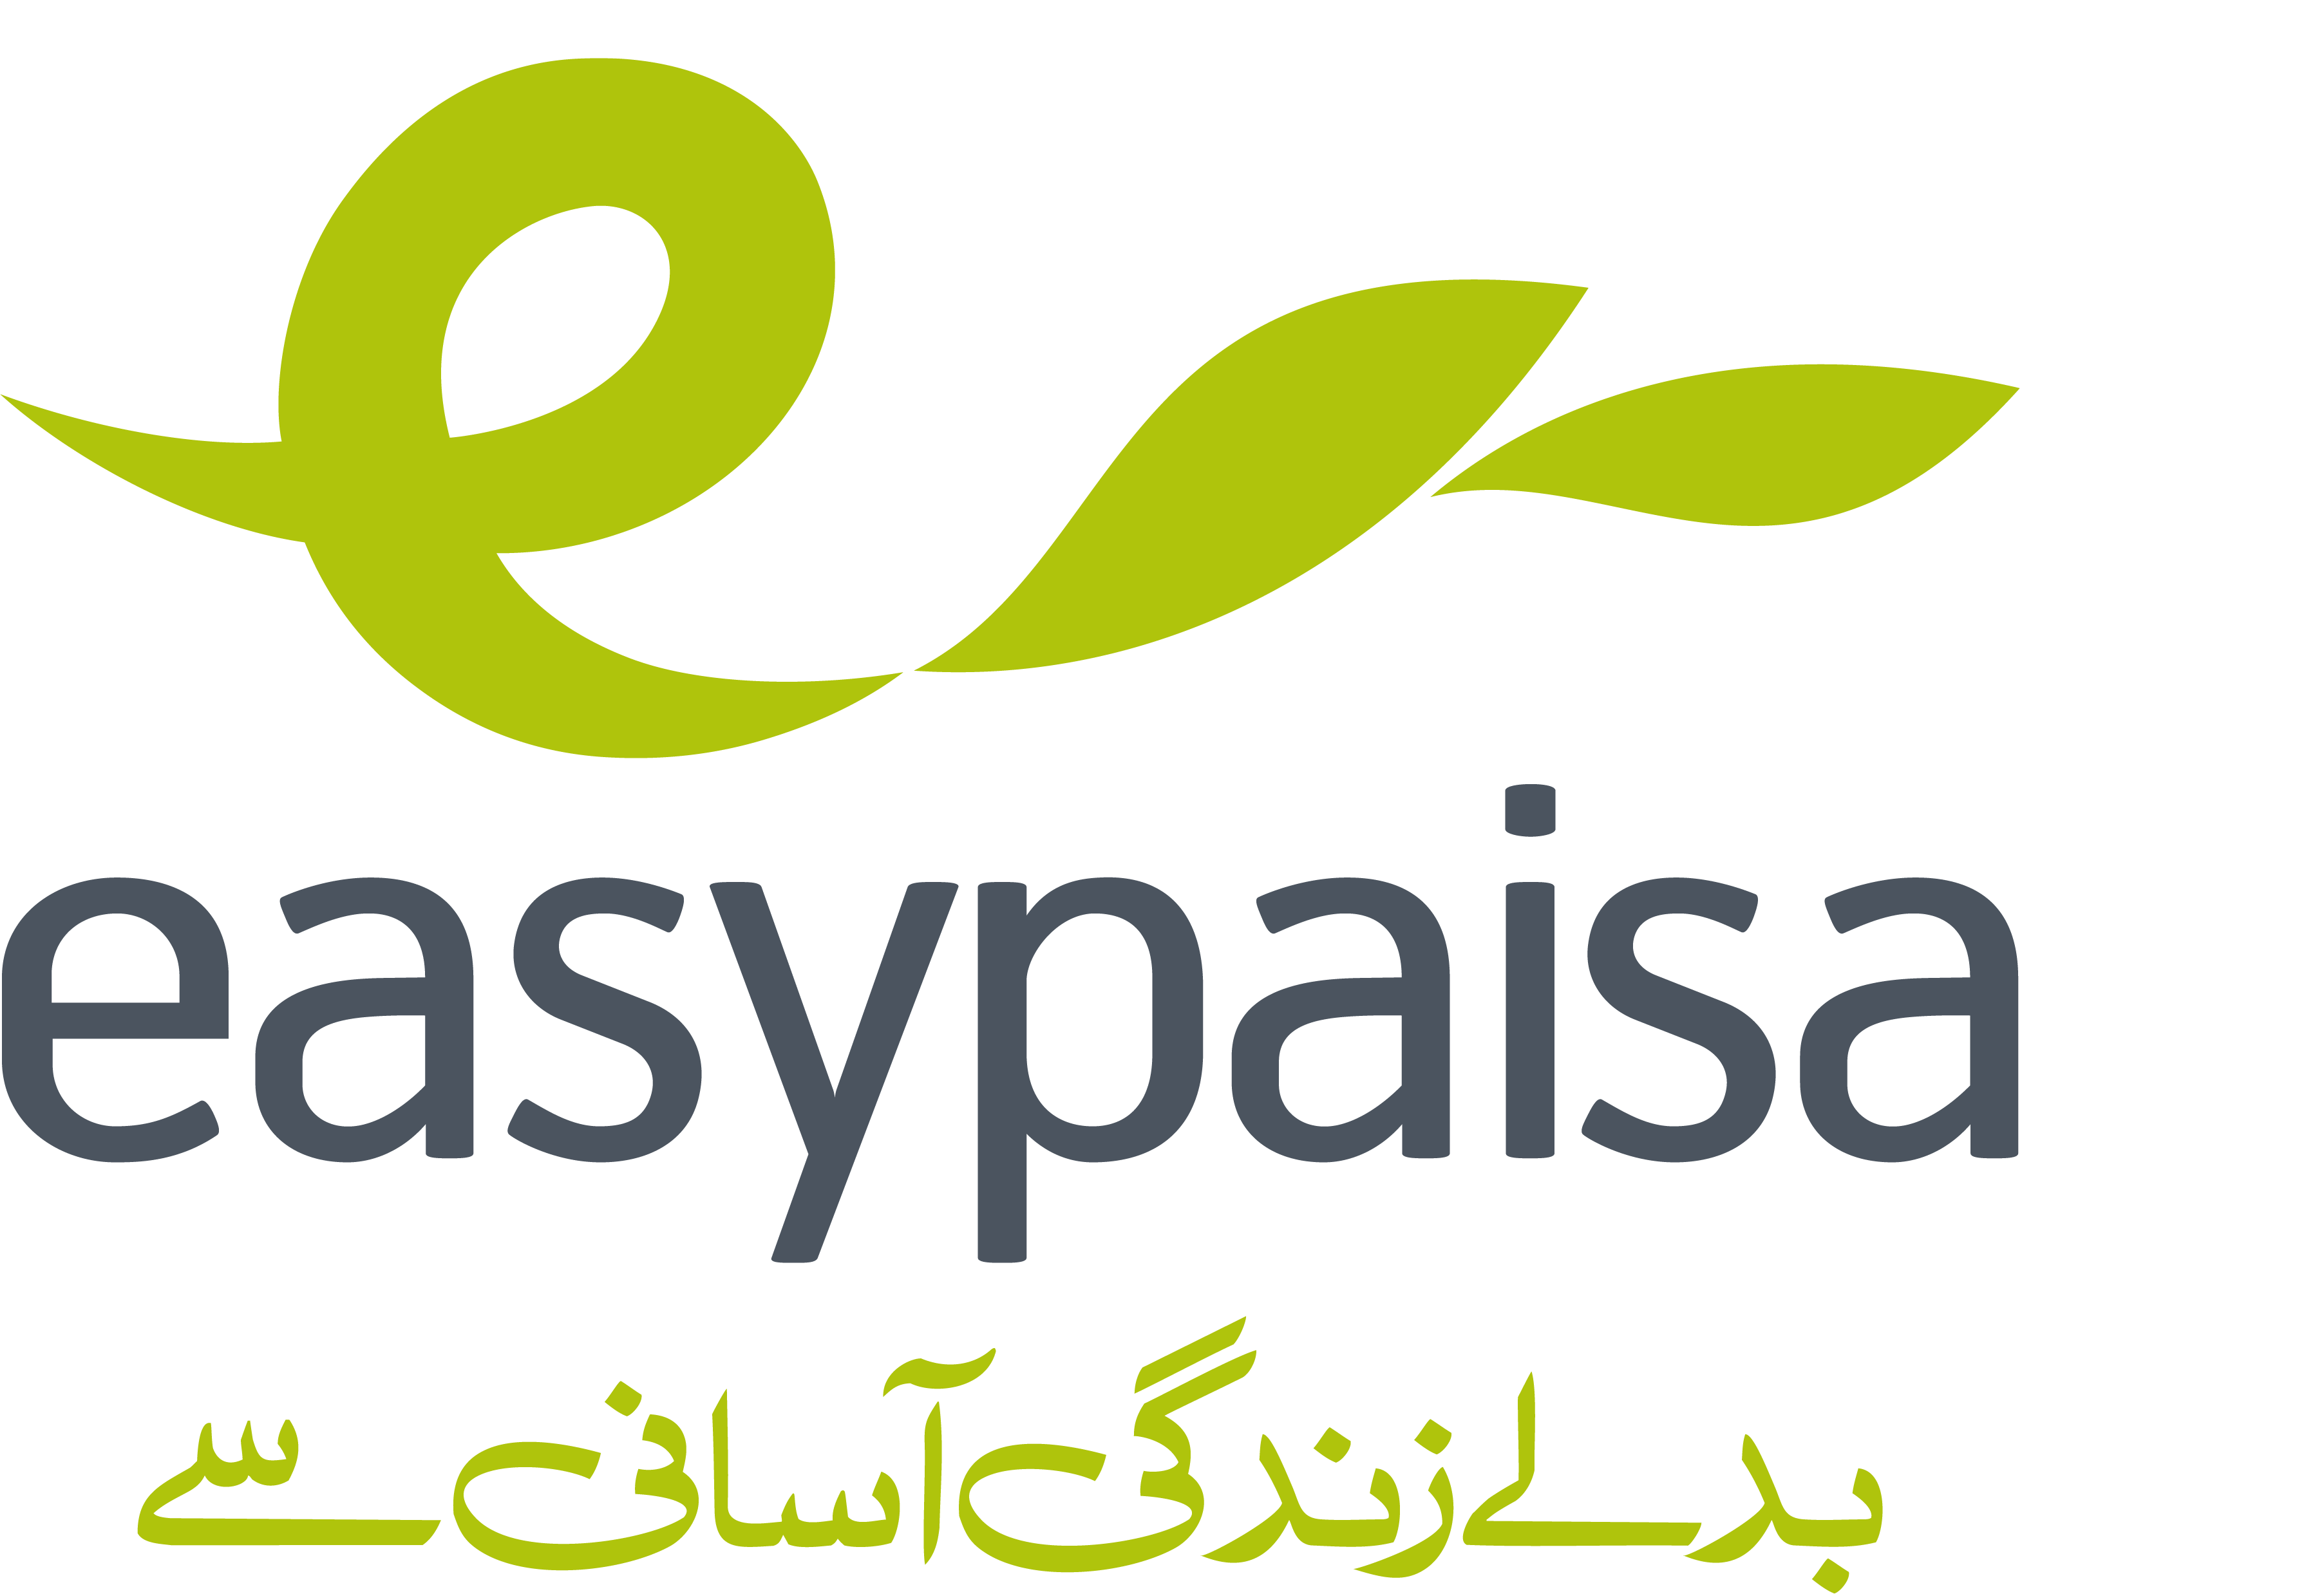 Easypaisa Logo